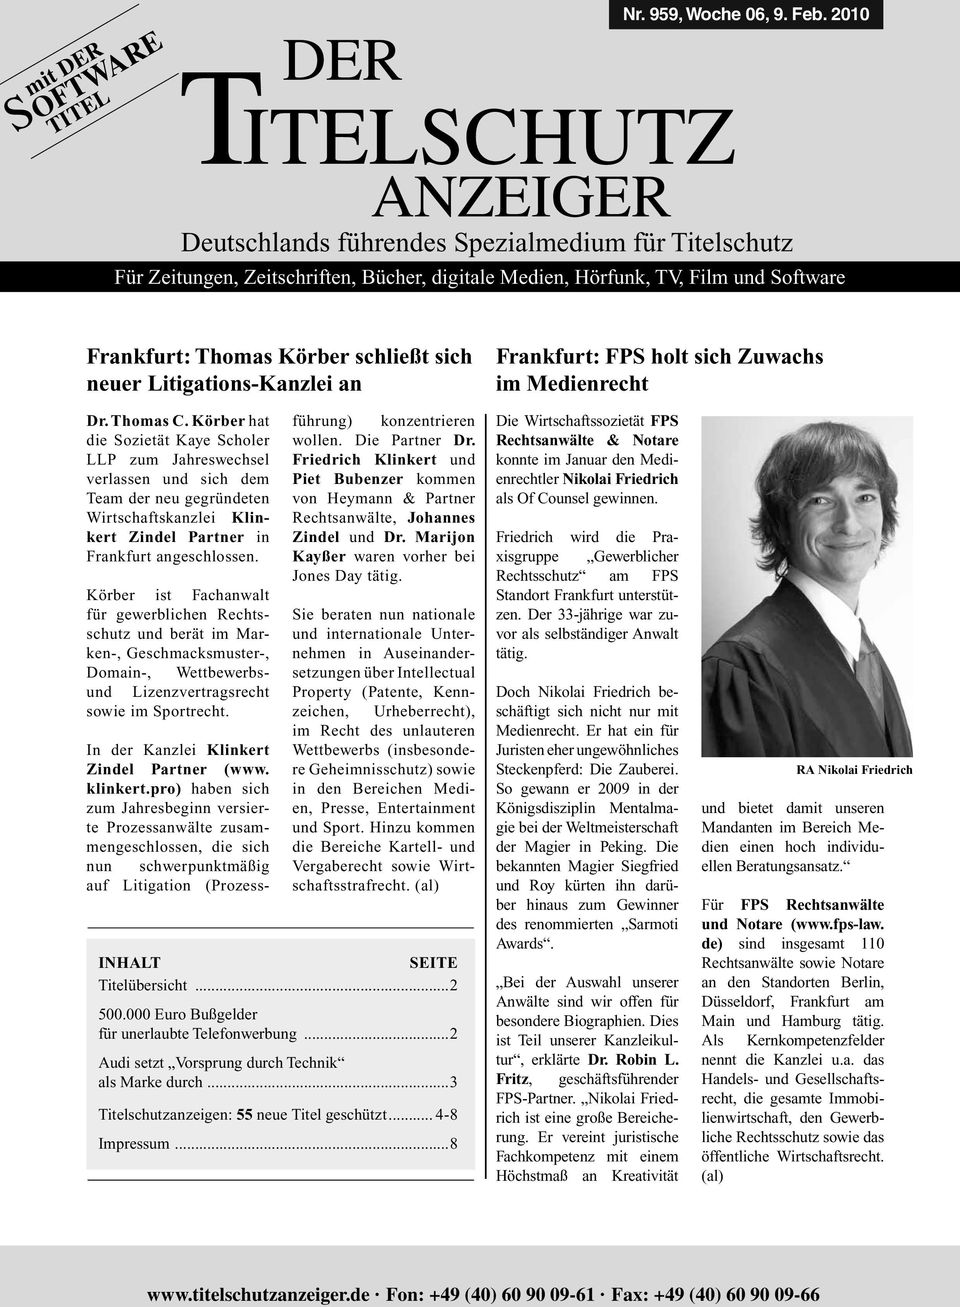 Körber hat die Sozietät Kaye Scholer LLP zum Jahreswechsel verlassen und sich dem Team der neu gegründeten Wirtschaftskanzlei Klinkert Zindel Partner in Frankfurt angeschlossen.